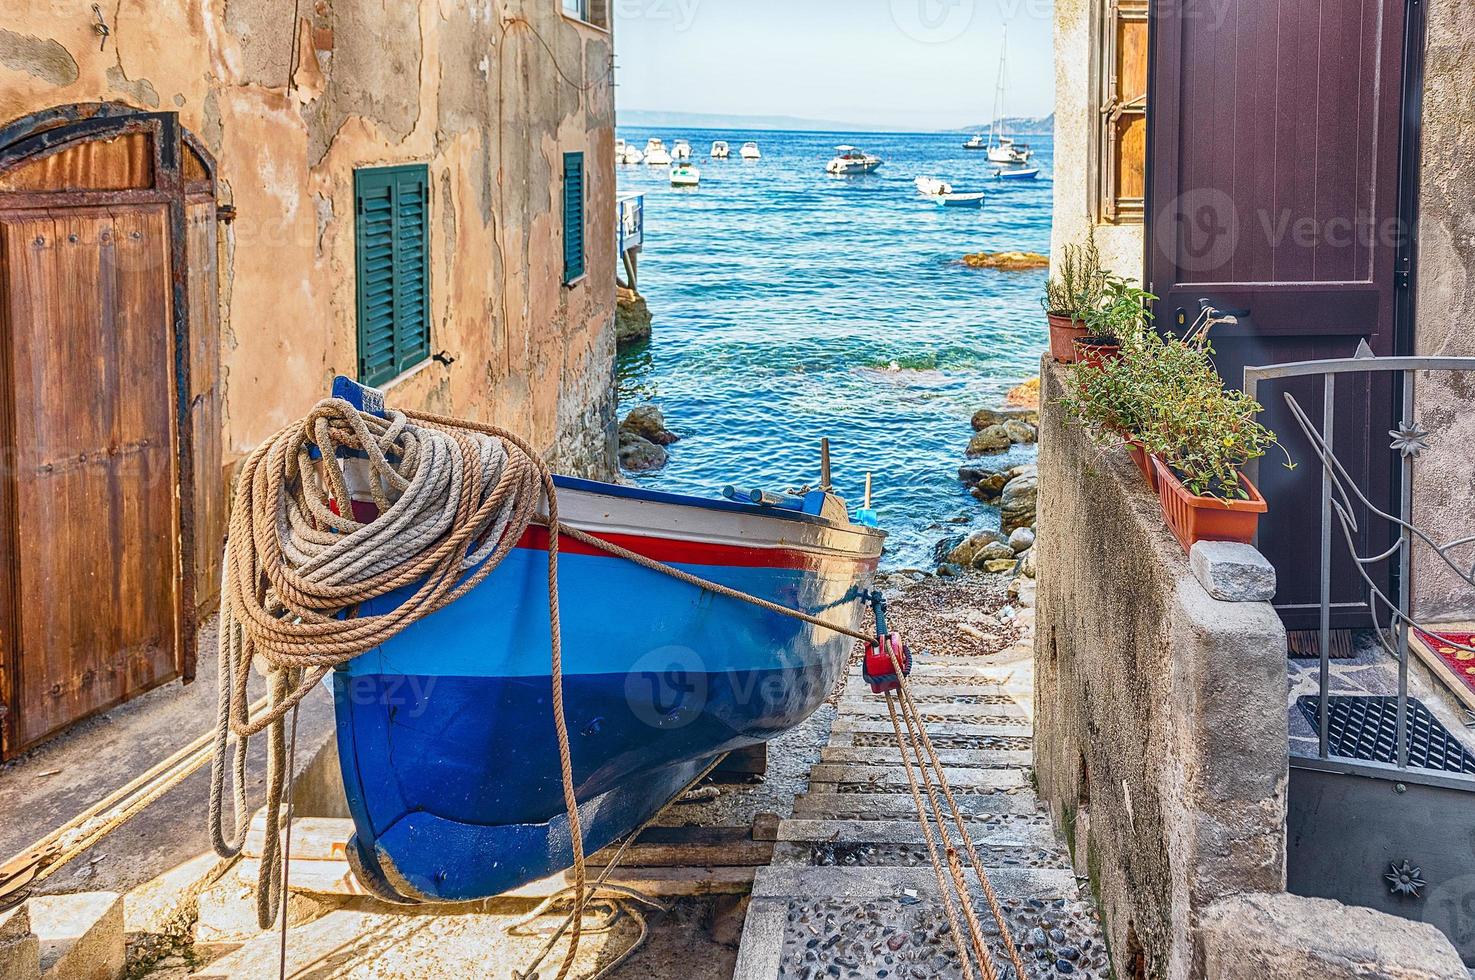 pittoreske straatjes en steegjes in de badplaats, scilla, italië foto